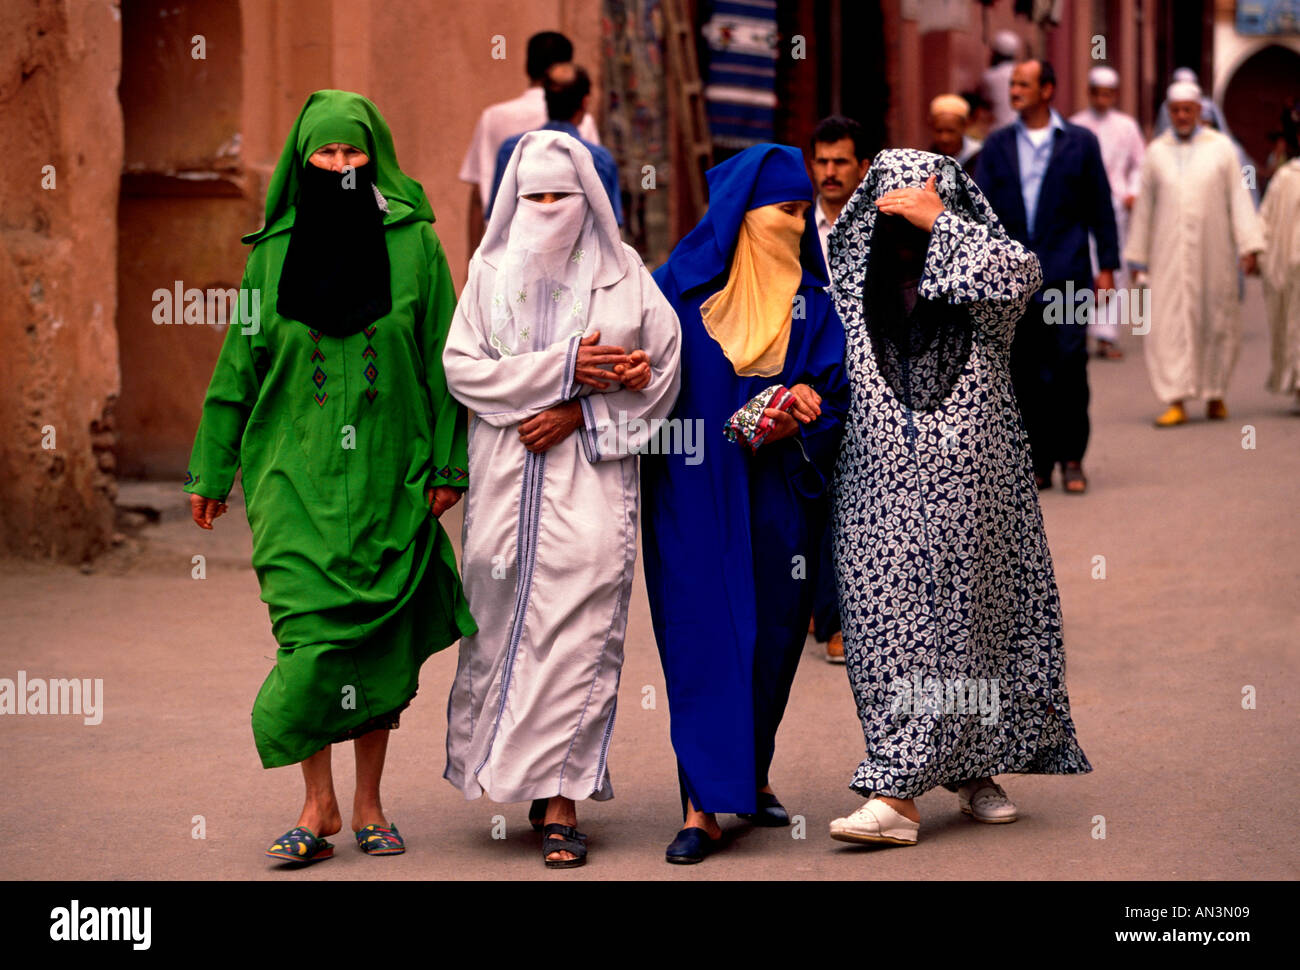 4, 4, Marokkaner, marokkanischen Frauen, verschleierte Frauen, bedeckt von Kopf bis Fuß, Palast Viertel, marrakech, Marrakesch, Marokko, Nordafrika, Afrika Stockfoto